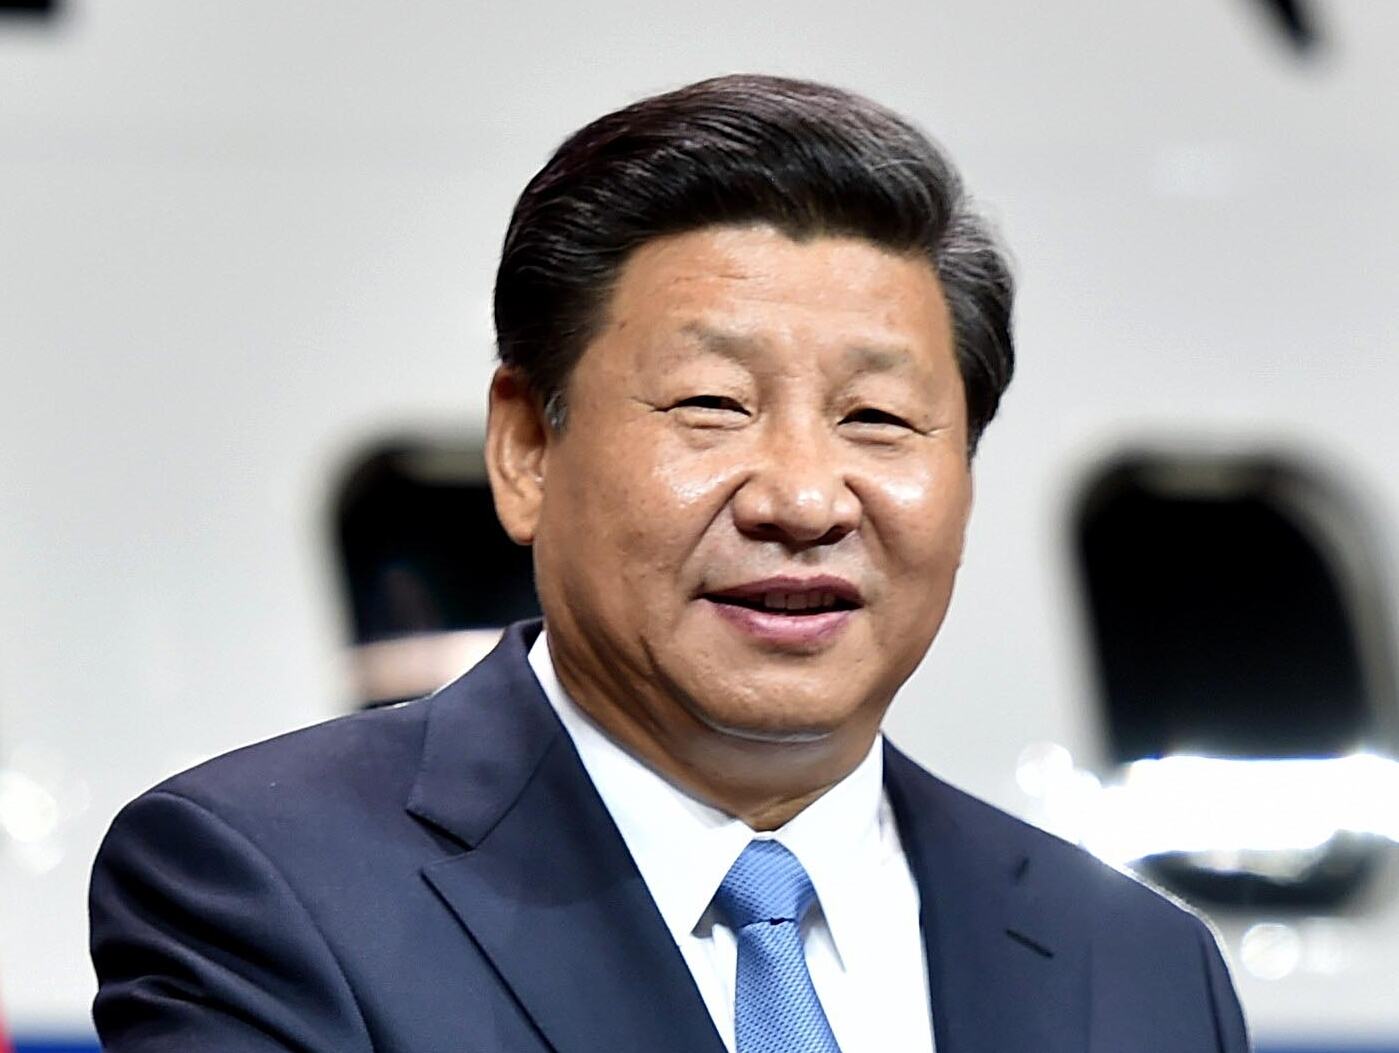 चीनी राष्ट्रपति शी जिनपिंग की नजरबंदी की बातों में कितना है दम, चीनी मीडिया से लेकर सत्ता प्रतिष्ठान मौन क्यों ?